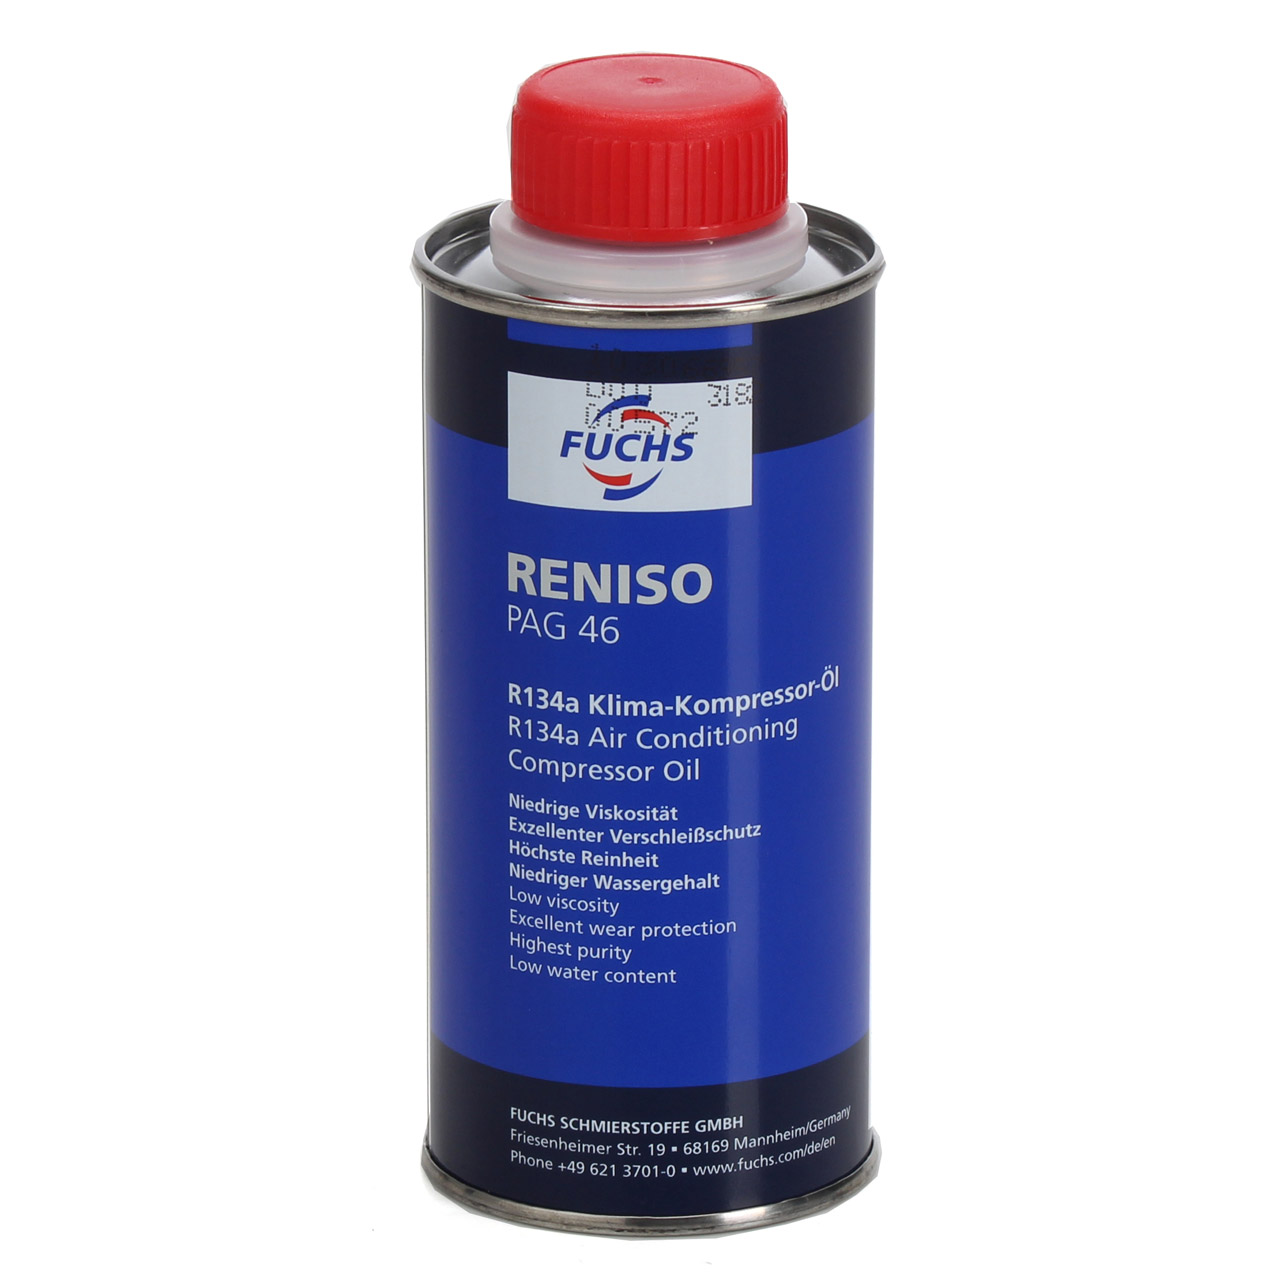 3x 250ml FUCHS RENISO PAG 46 R134a Kompressor Öl Kompressoröl Klimaanlagenöl